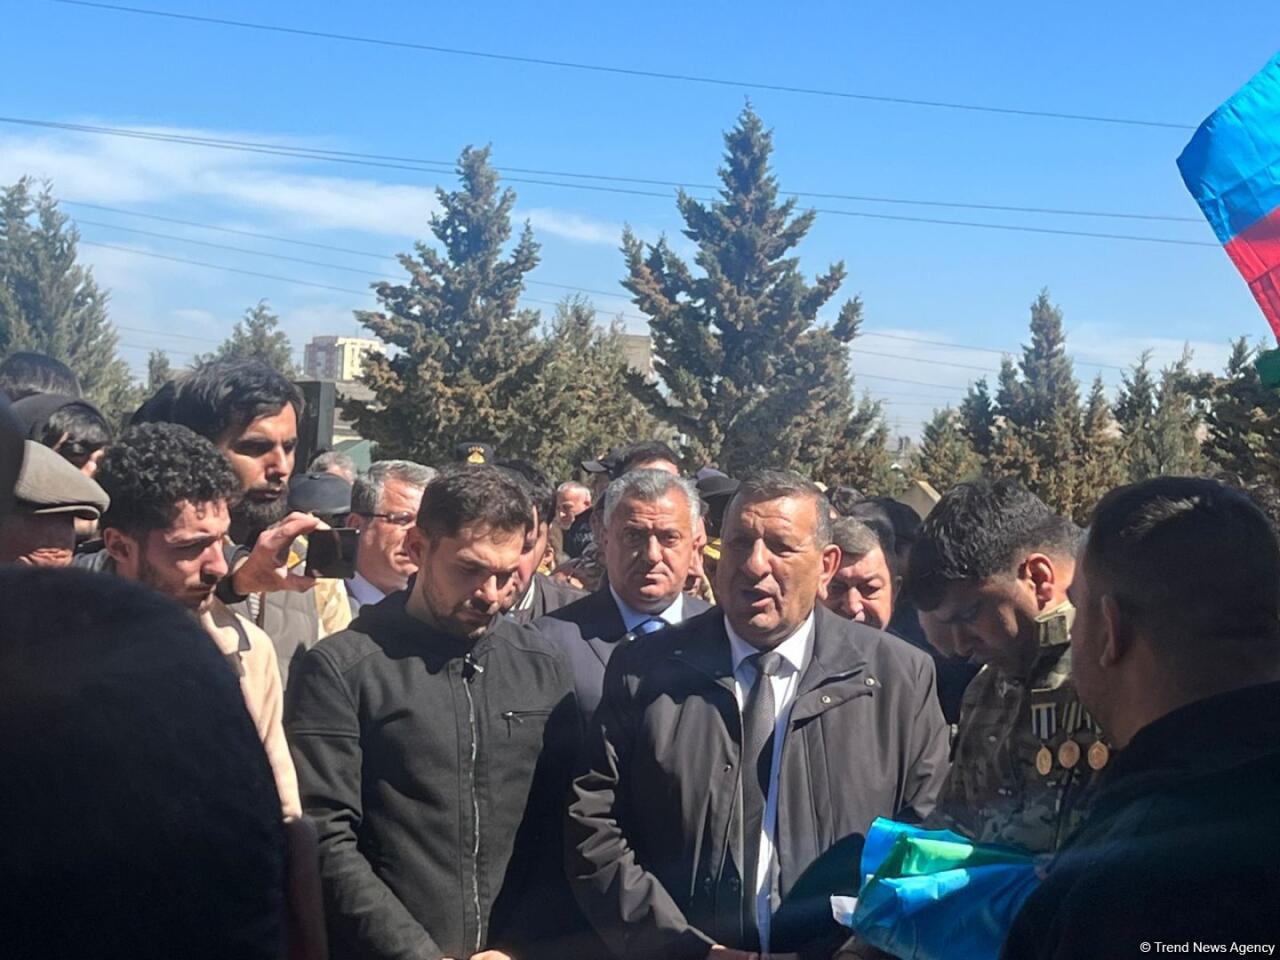 Останки Акифа Махмудова, пропавшего без вести во время Ходжалинского геноцида, захоронены спустя 32 года